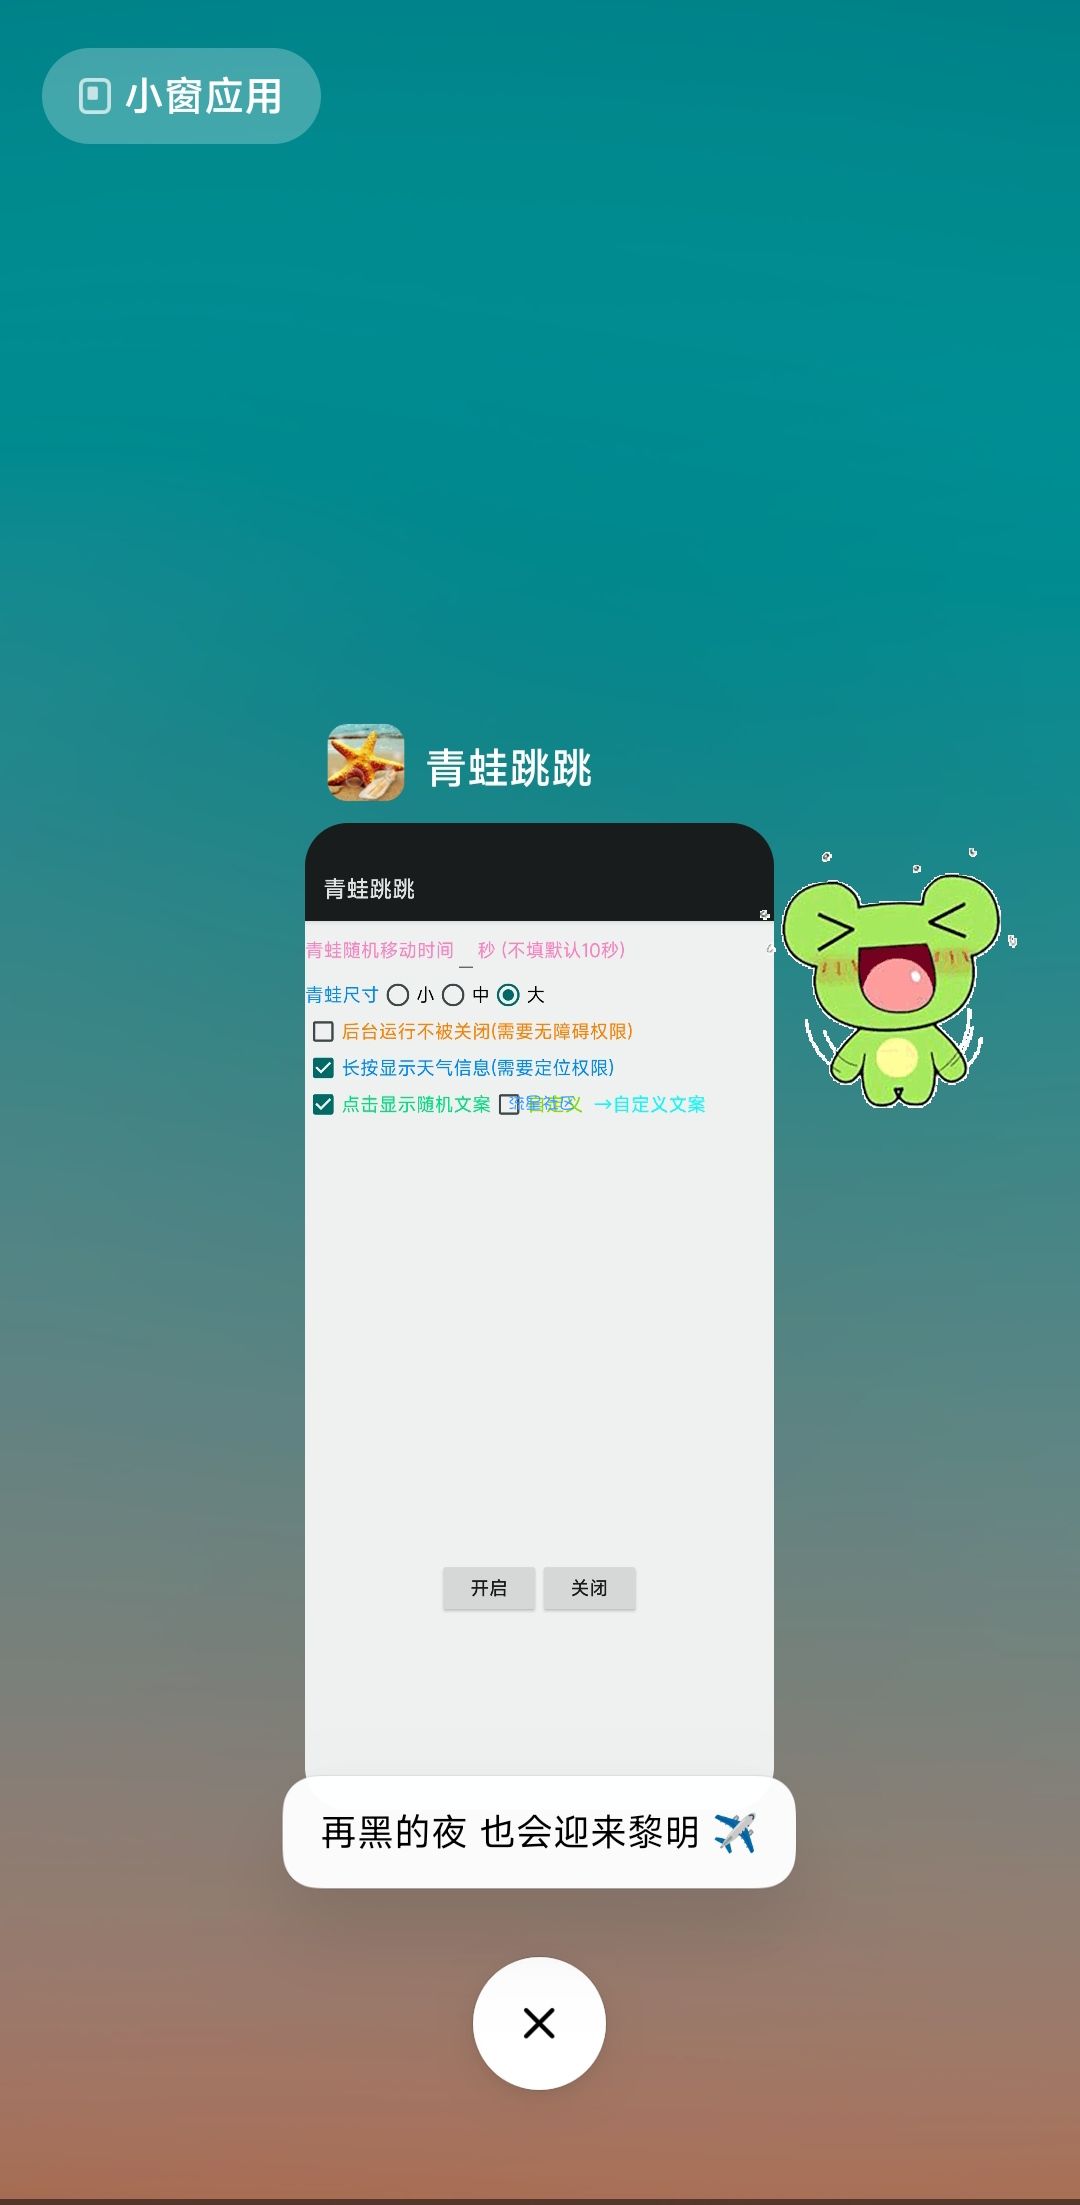 【手机美化】桌面跳跳蛙宠物 QQ弹弹非常可爱